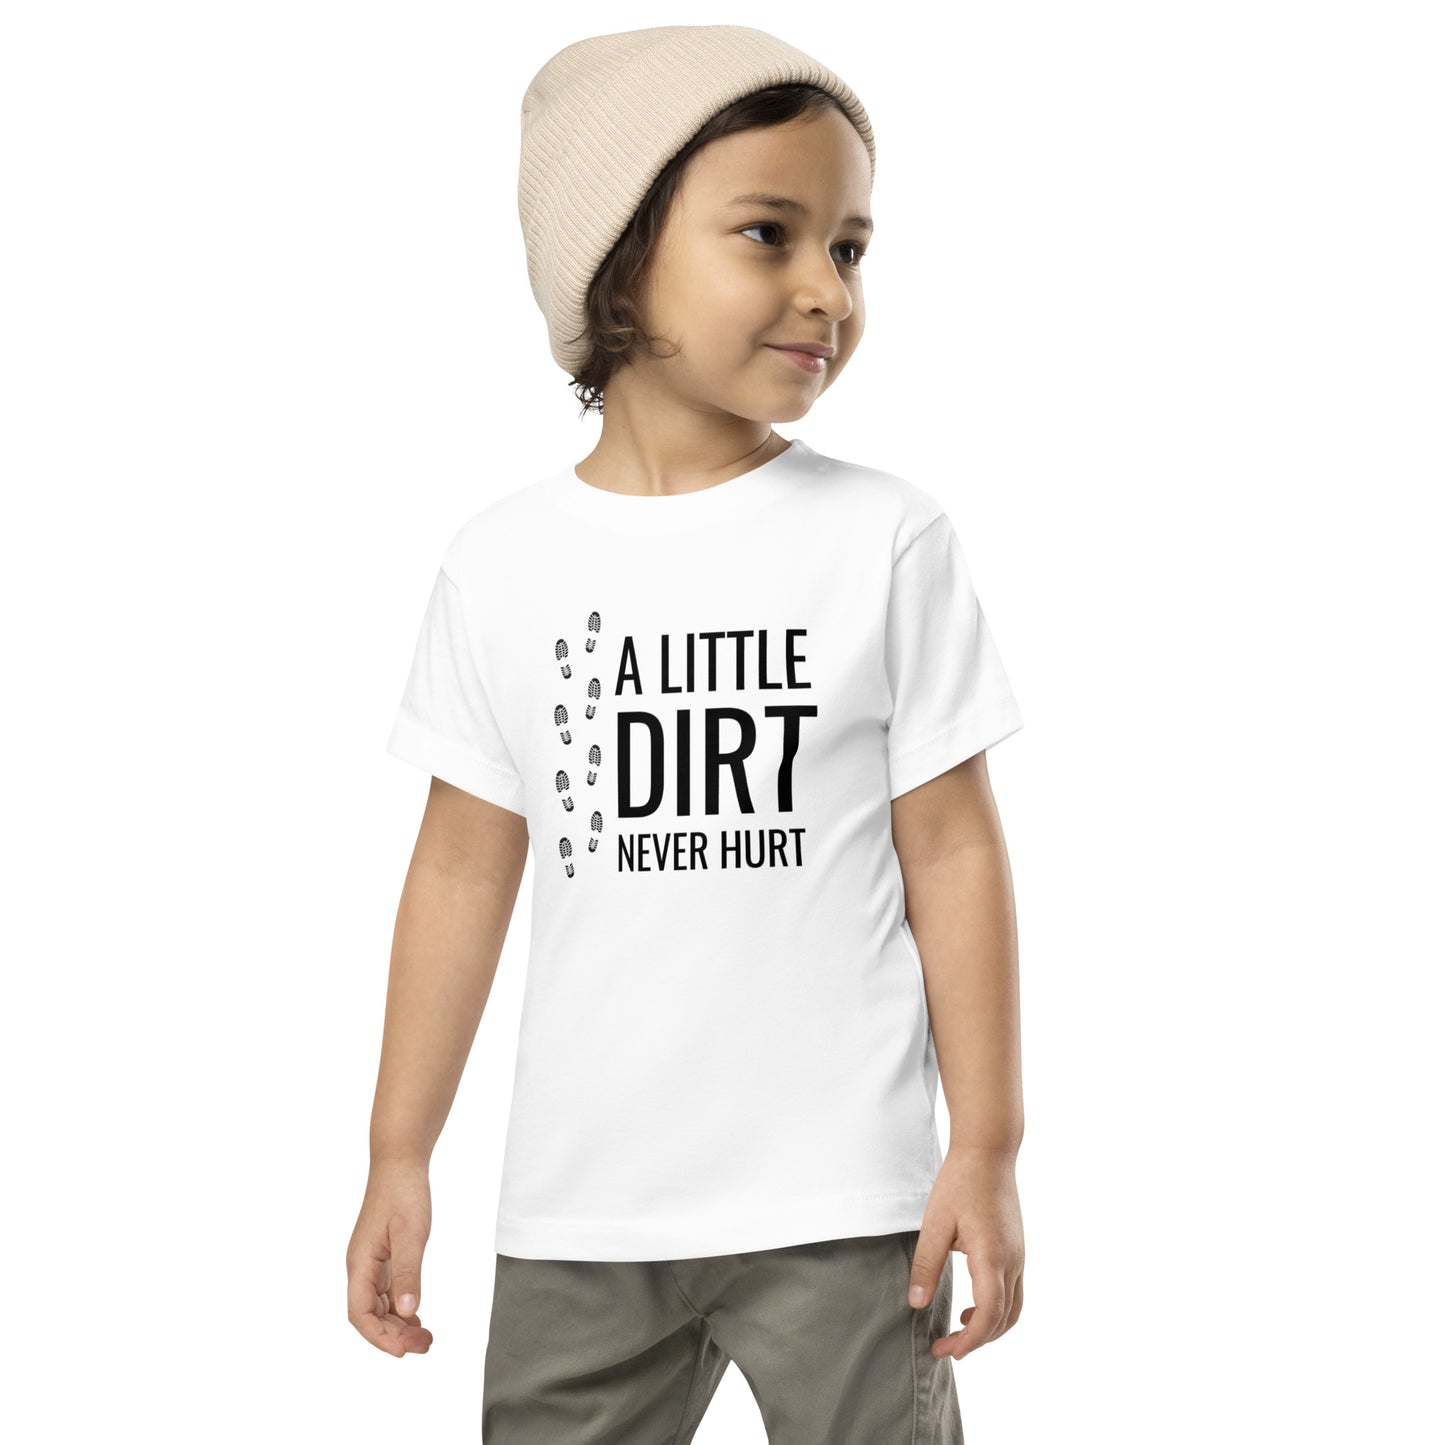 A Little Dirt Never Hurt Toddler Tee